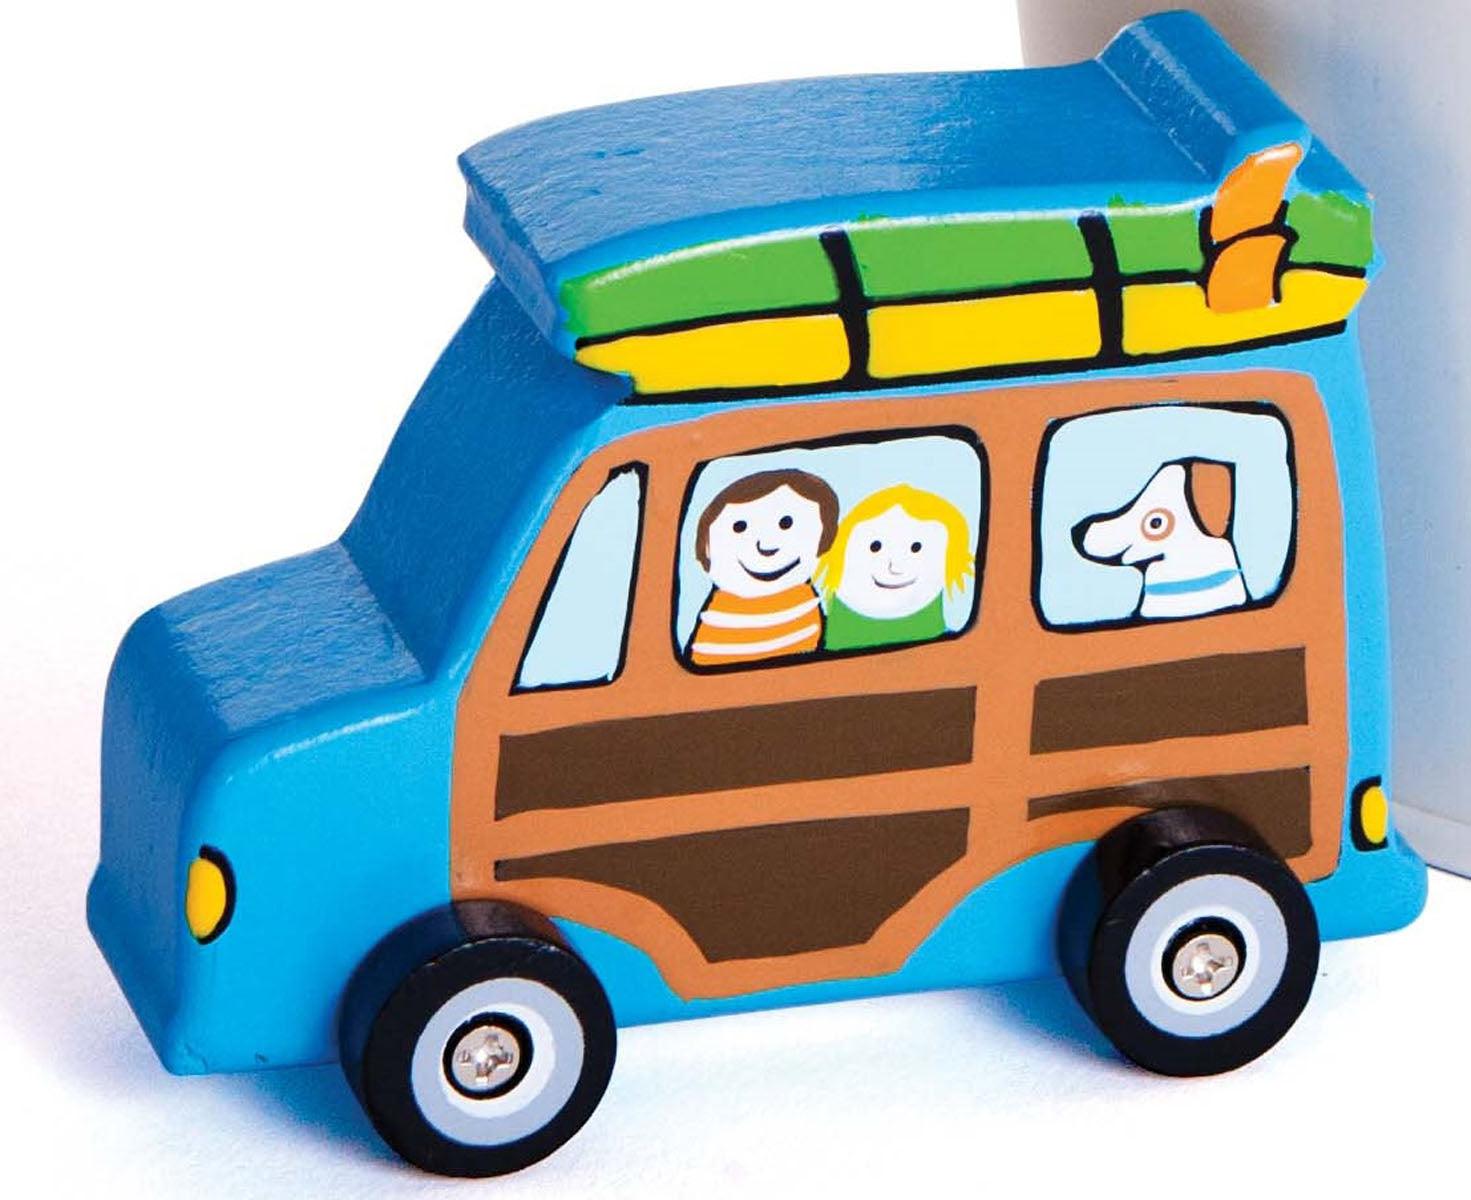 Surfari Wooden Car - boy toy - Bobangles